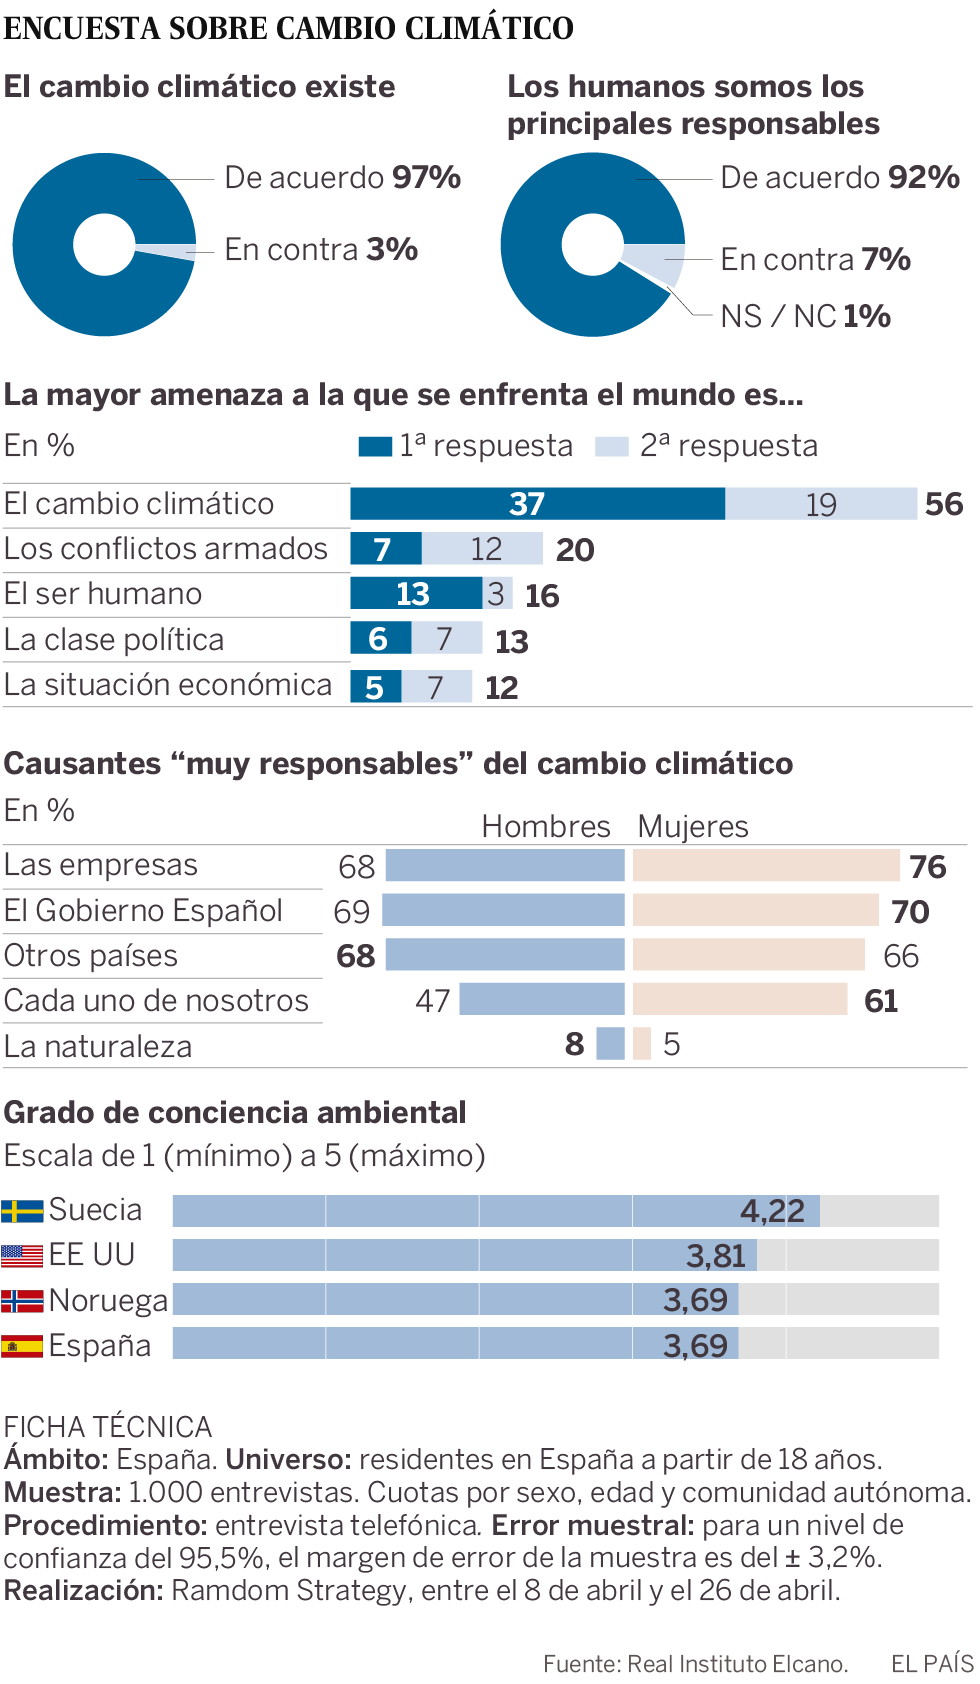 La mayoría de los españoles piensa que el cambio climático es la principal amenaza del mundo